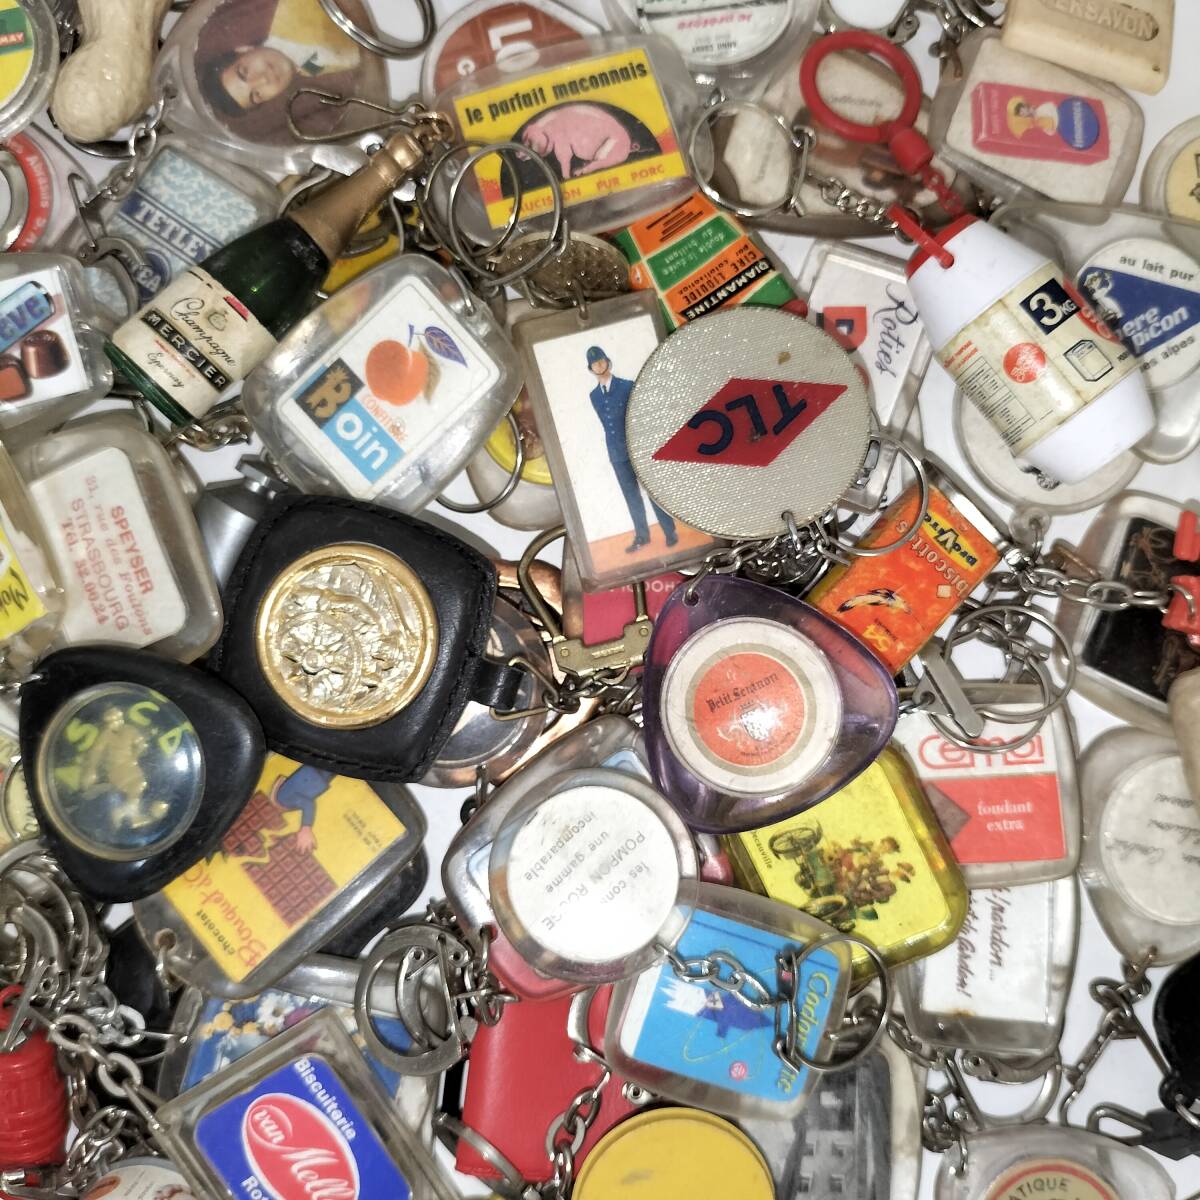 * French key holder 100 piece set * France miscellaneous goods set sale together large amount Vintage key holder C5-100-0520-5 Junk 